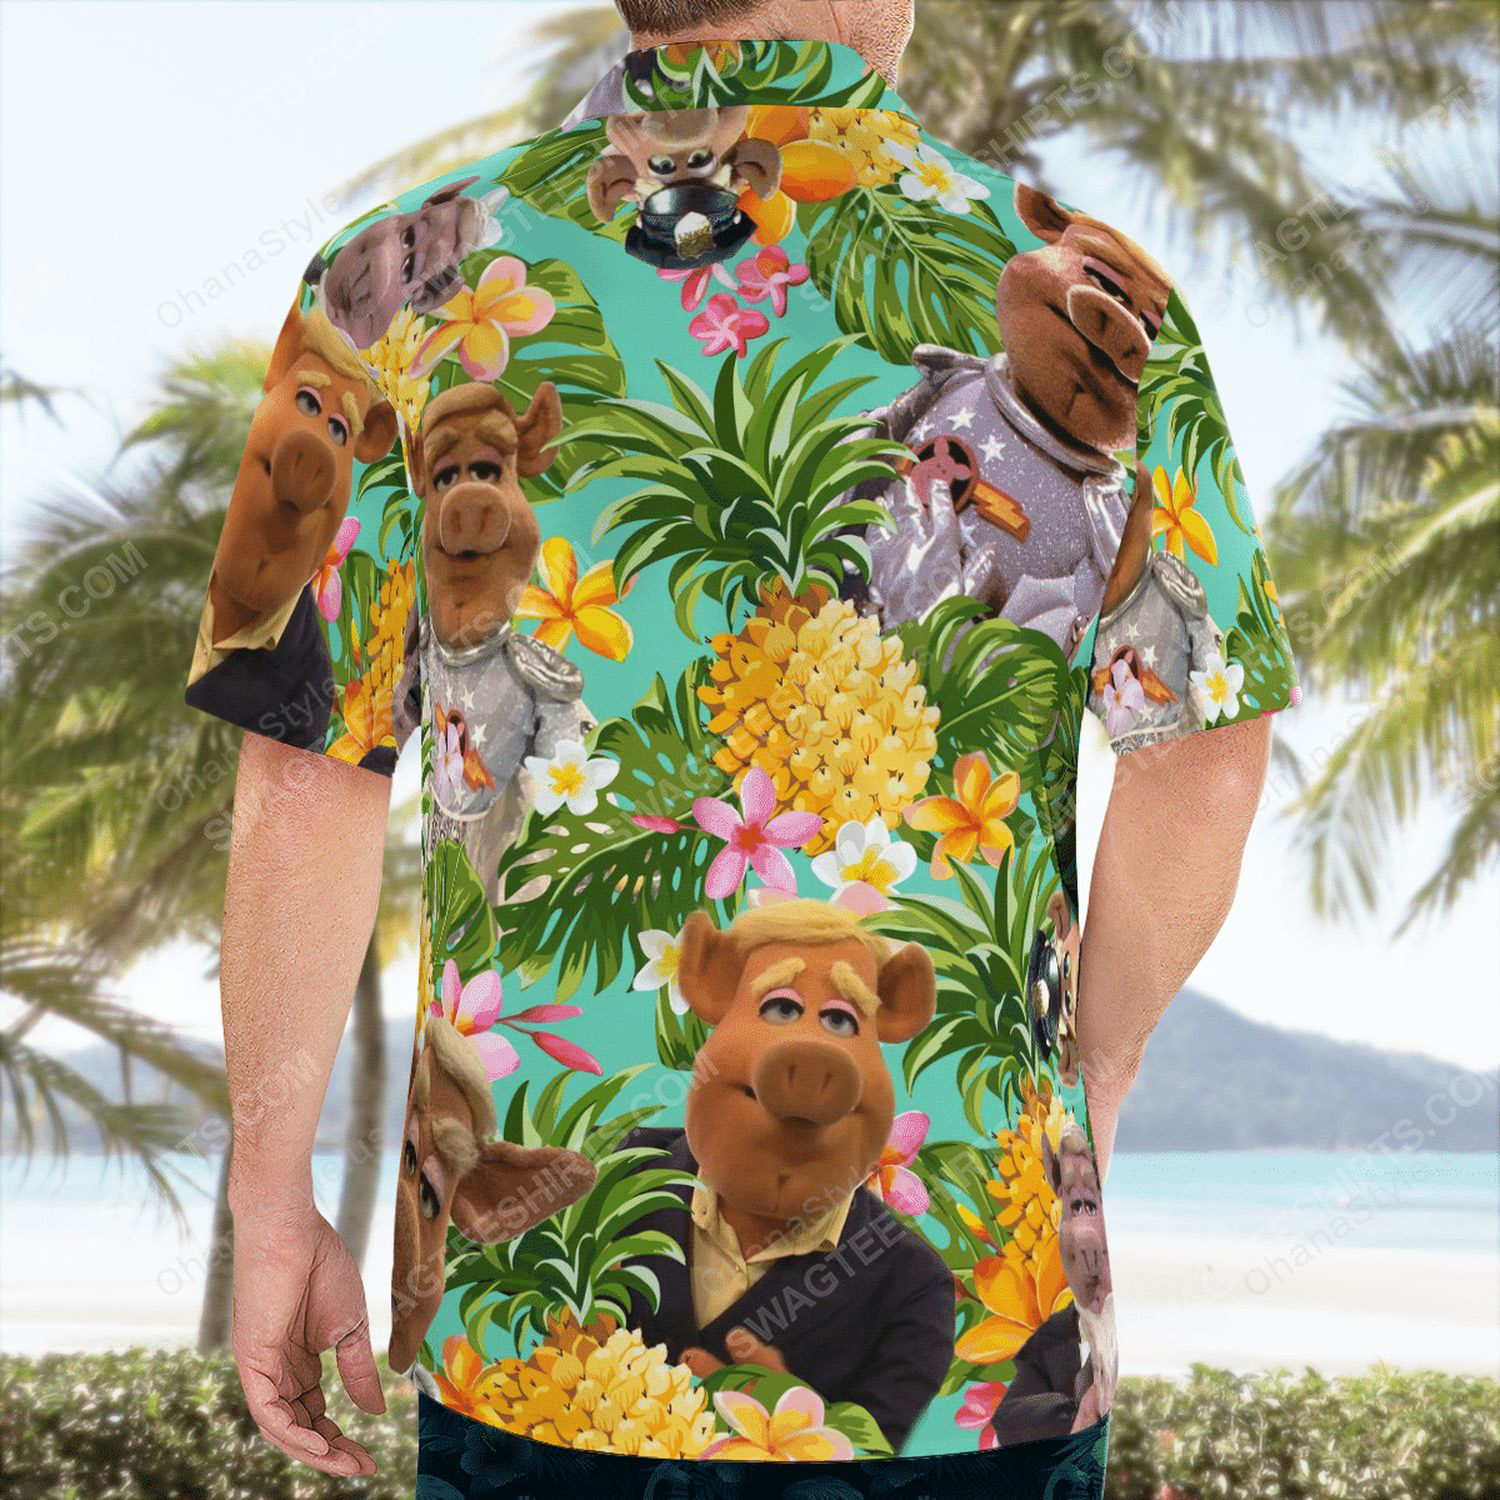 The muppet show link hogthrob tropical hawaiian shirt 4